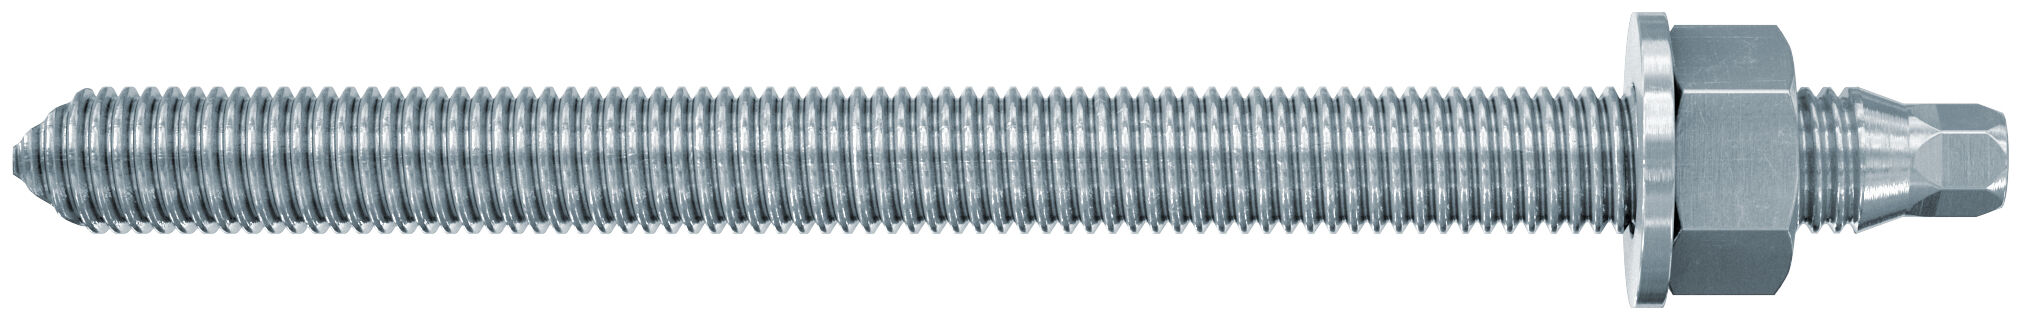 fischer threaded rod RG M 20 x 350 gvz steel grade 5.8